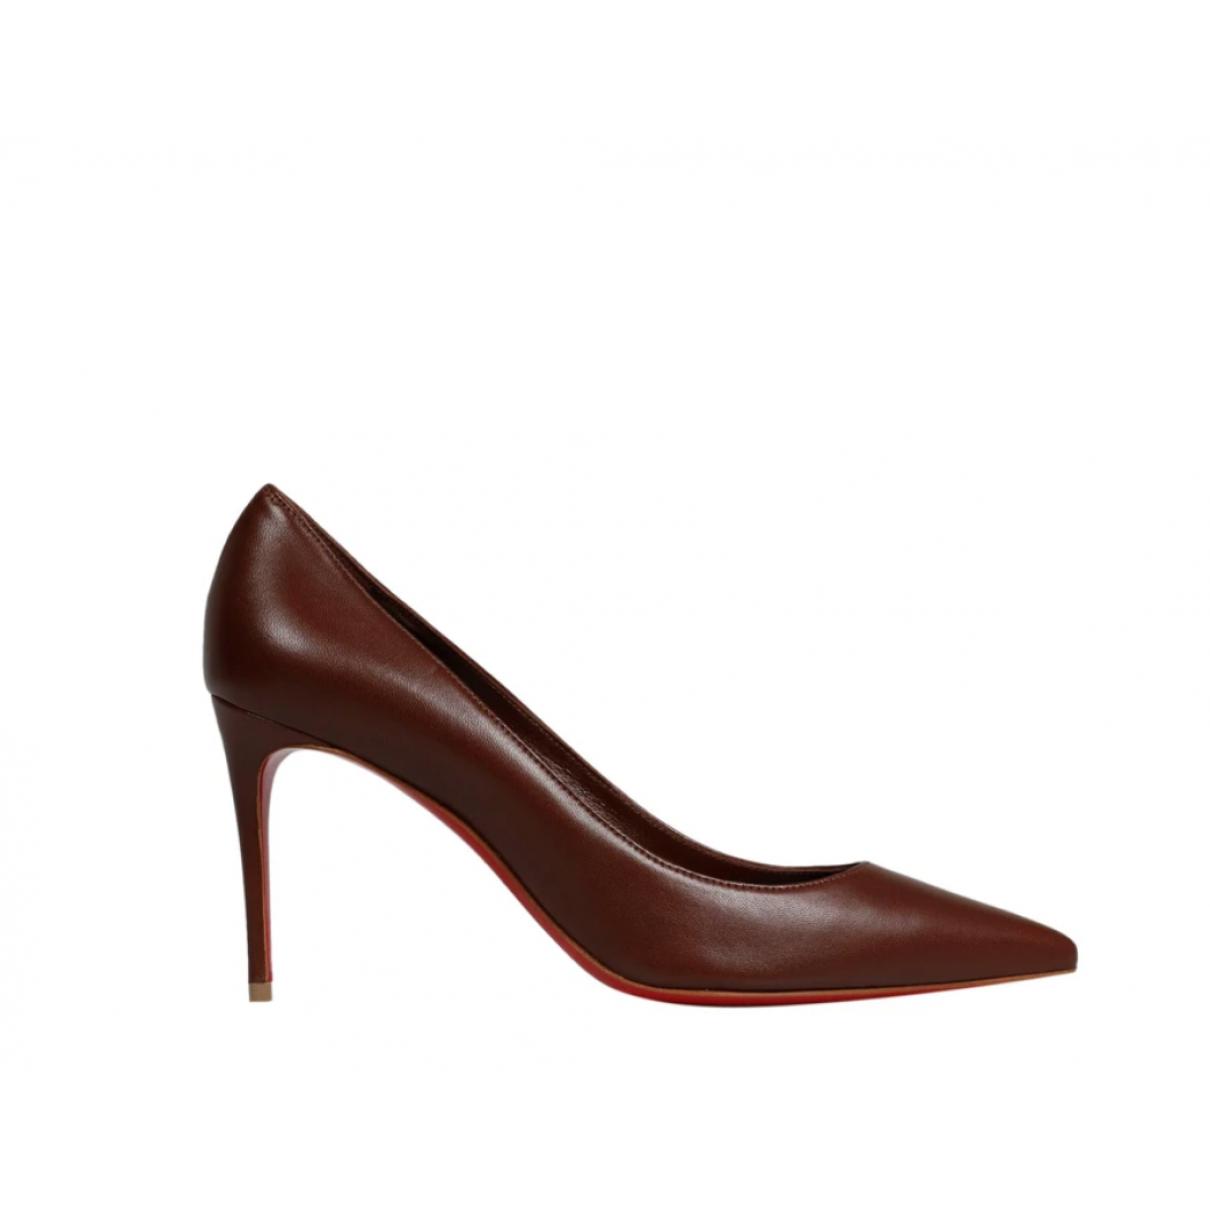 Leather heels - 5